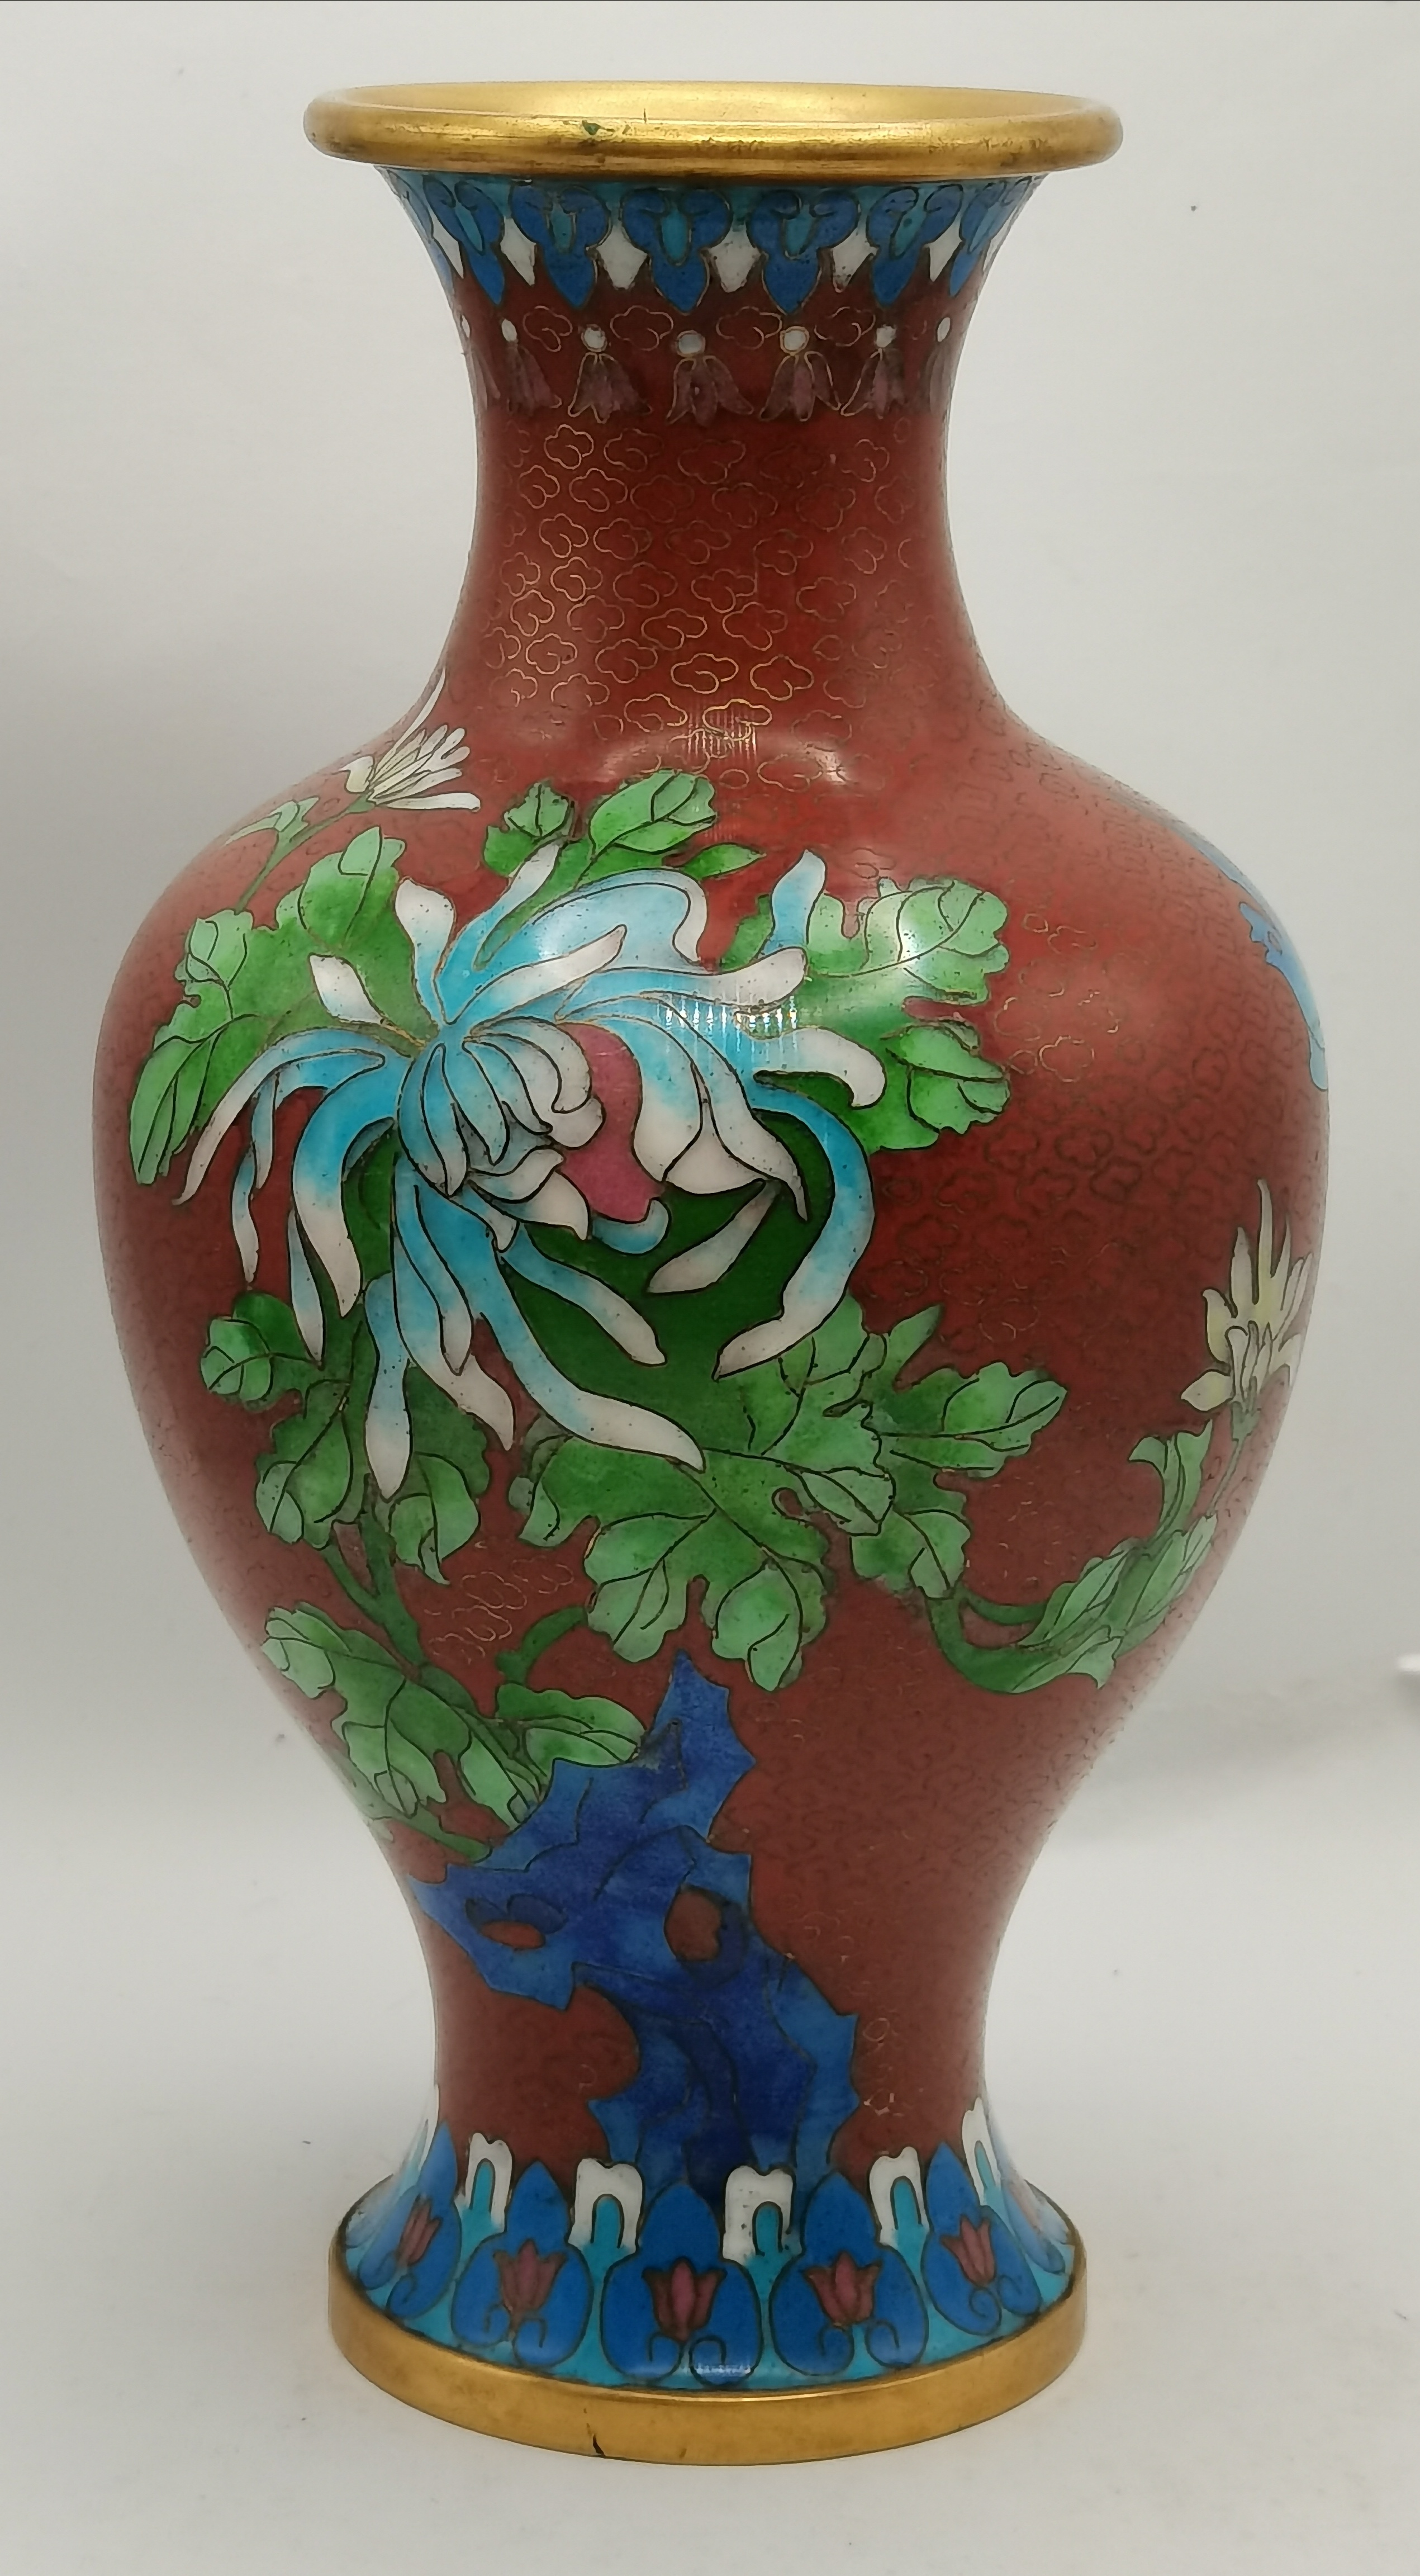 A cloisonné 20cm high vase in excellent condition